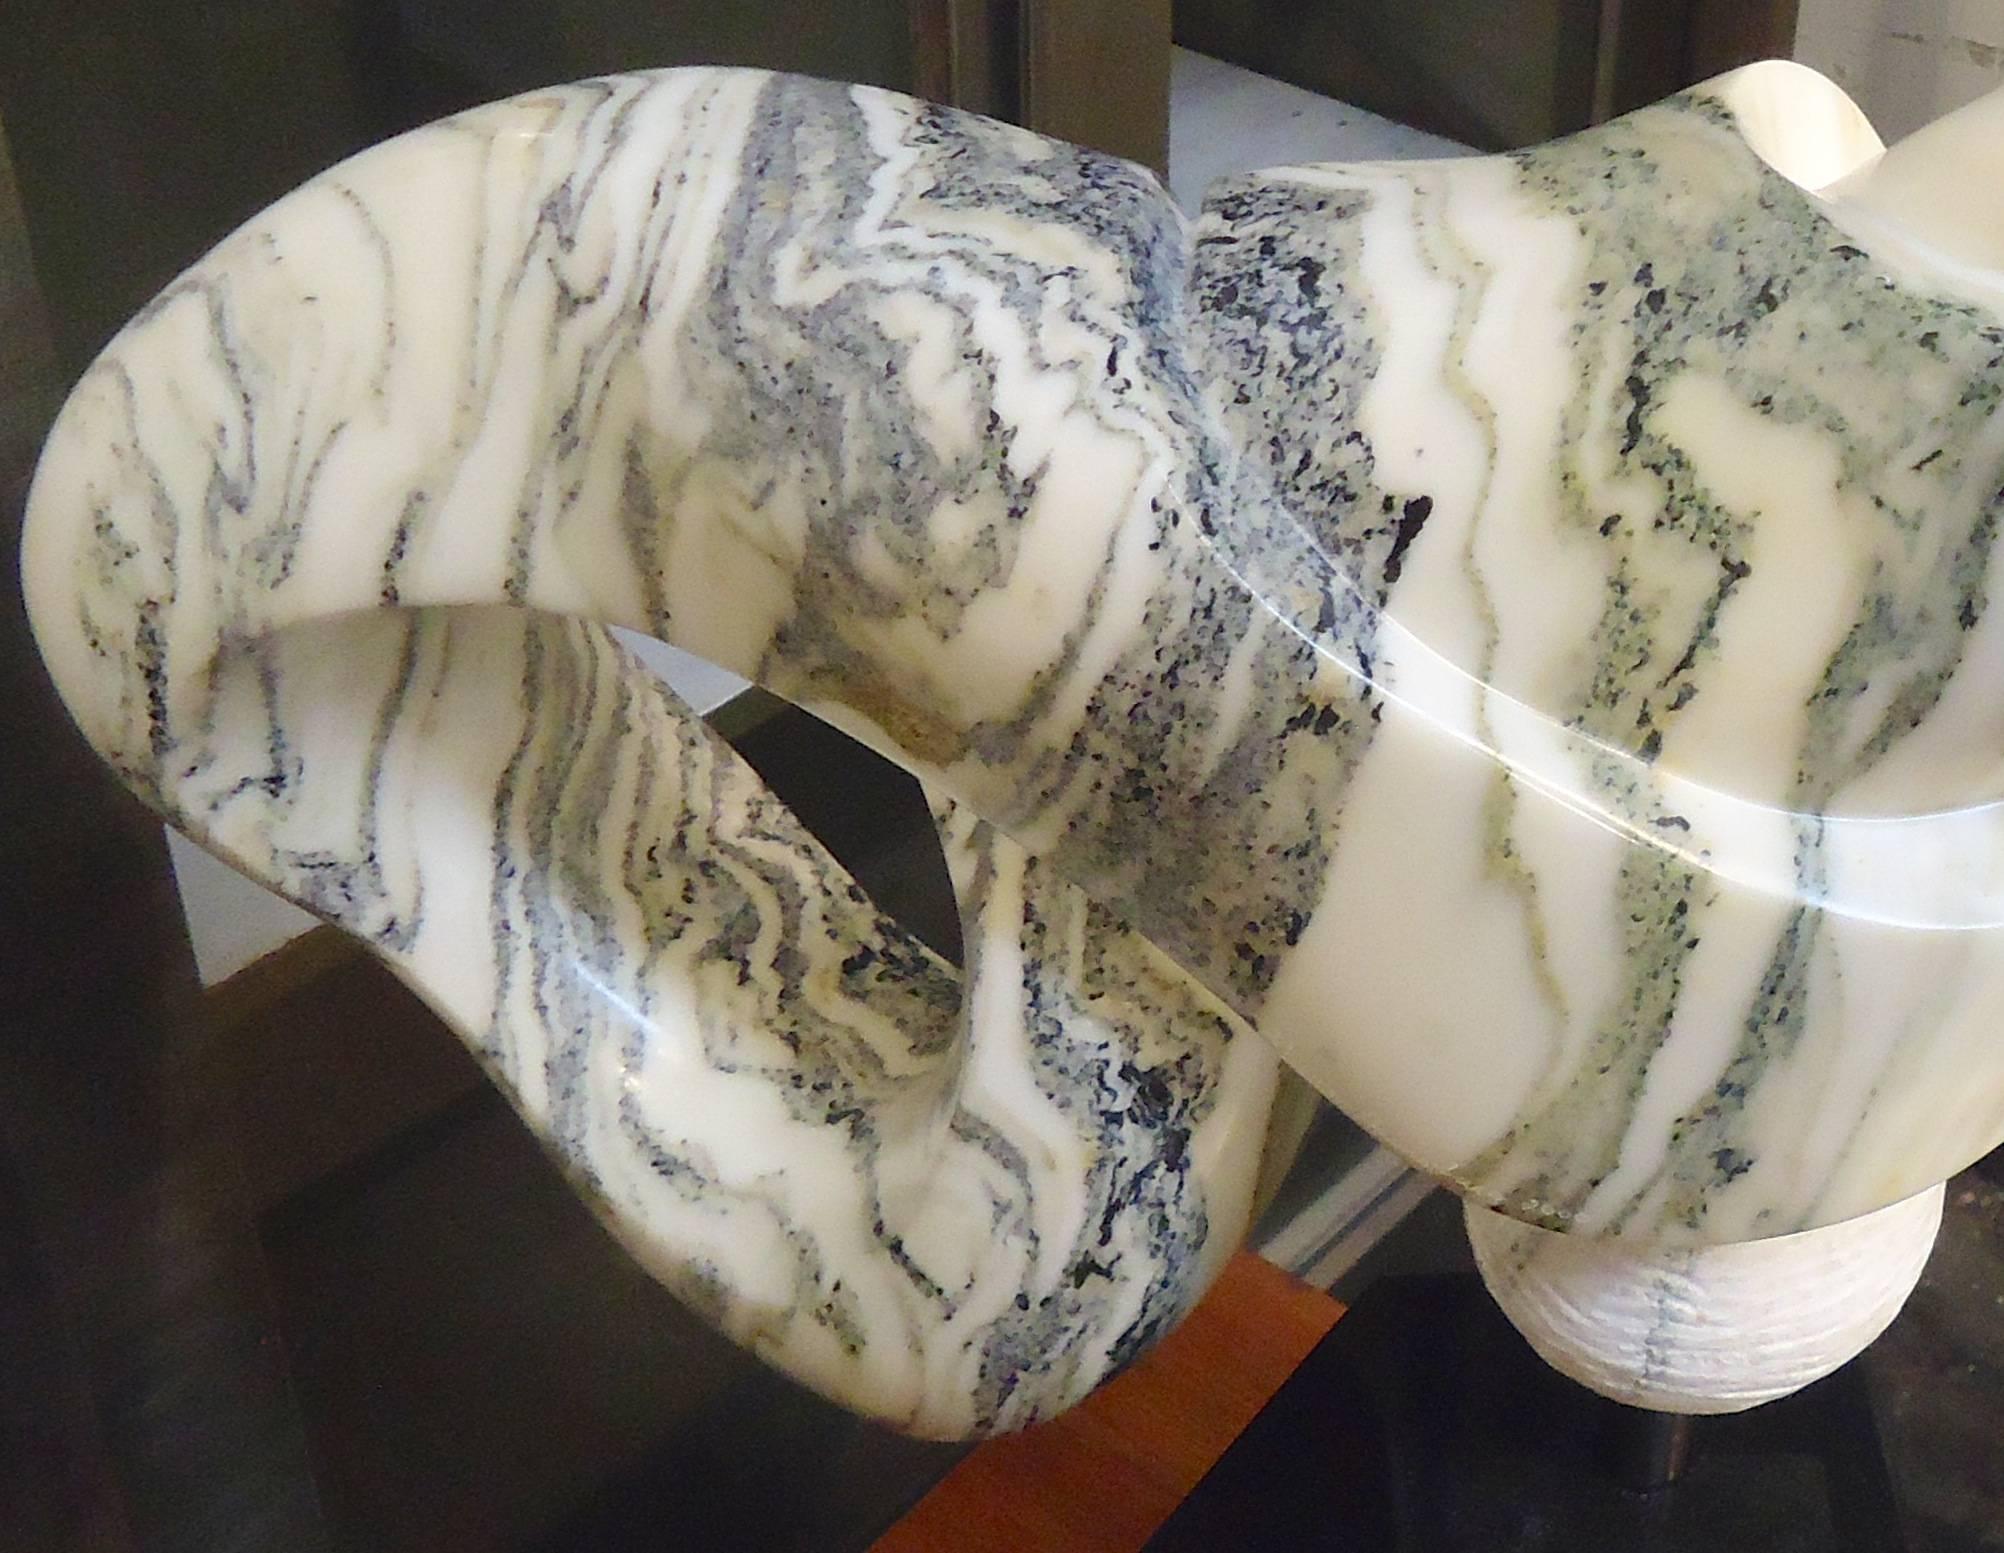 Wunderschönes gemeißeltes Marmorkunstwerk in Form einer Schleife oder eines Unendlichkeitssymbols. Signiert von der amerikanischen Künstlerin Sharon Gainsburg. Es handelt sich um eine sehr schwere Skulptur, die auf einem massiven schwarzen